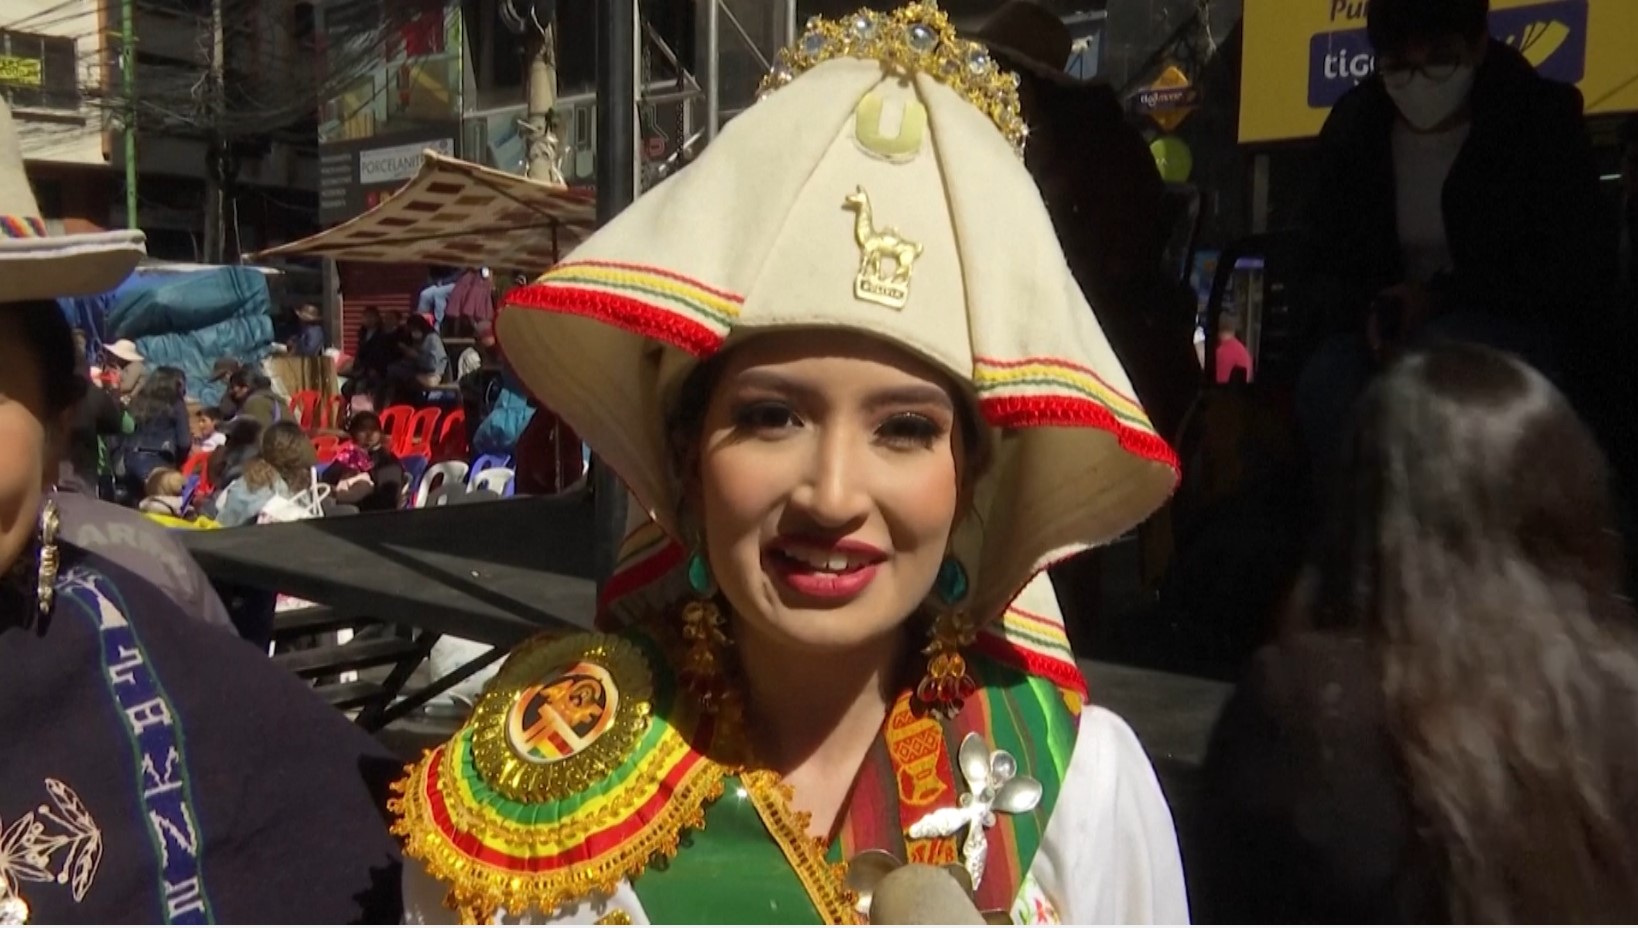 60 000 танцоров: в Боливии прошёл красочный фестиваль